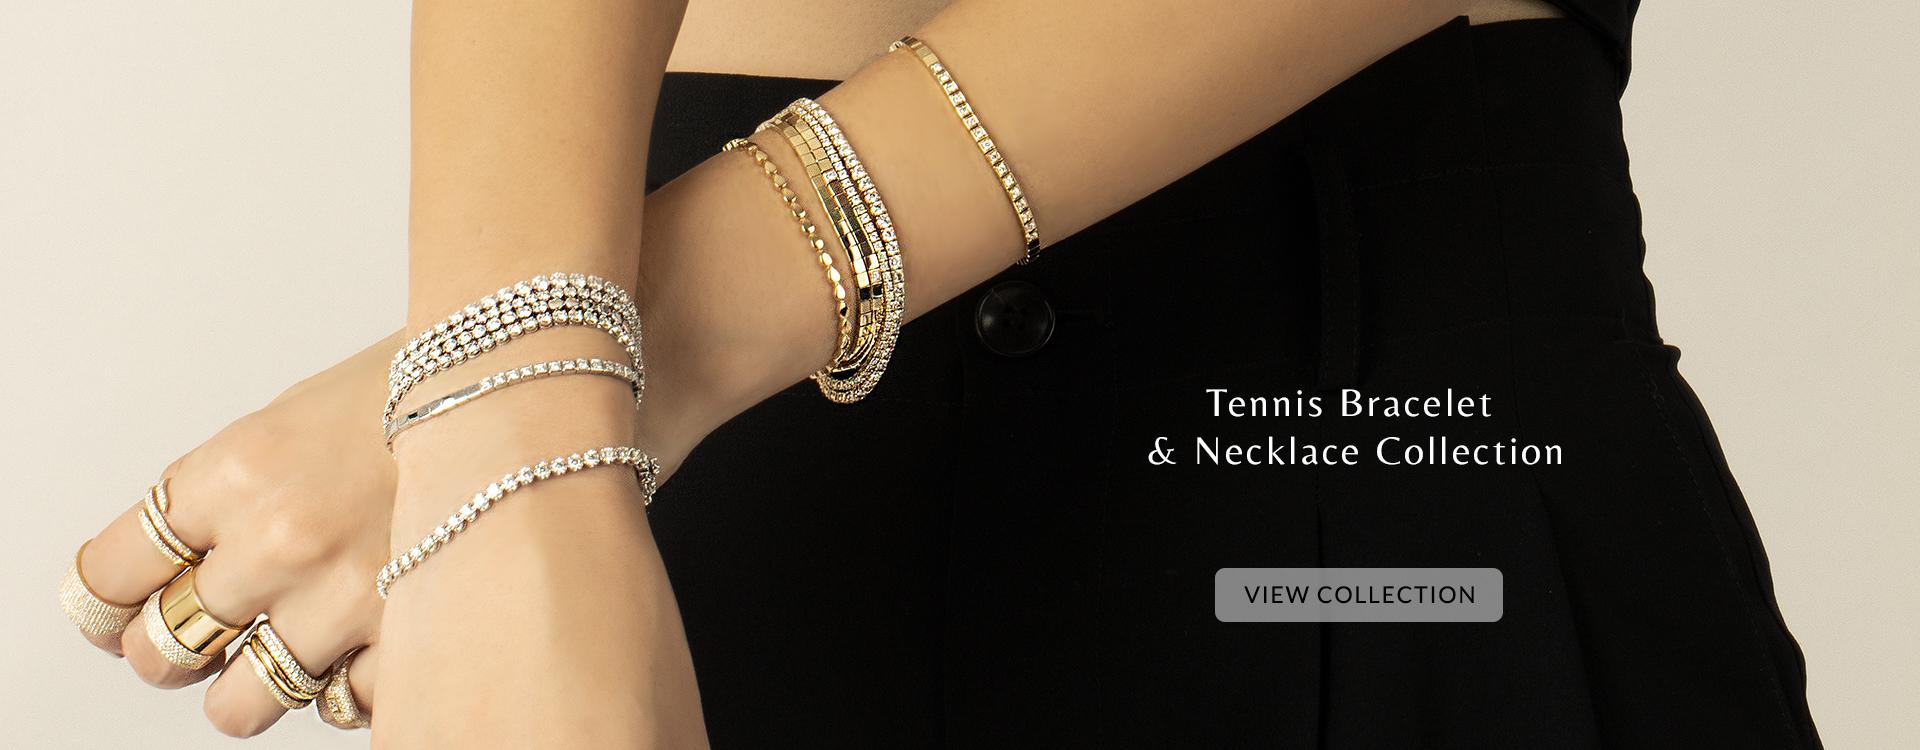 Tennis Bracelet & Necklace Collection